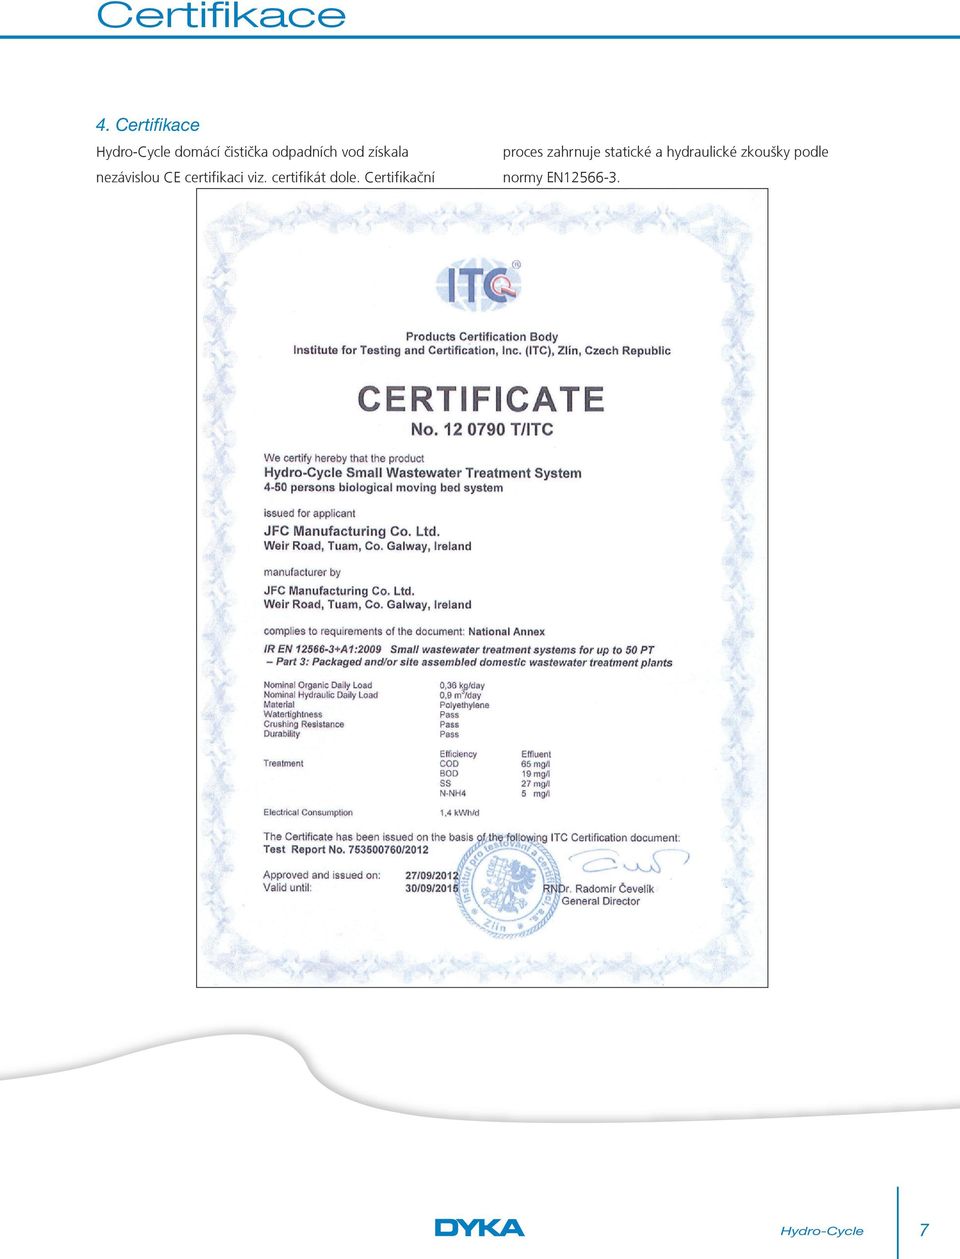 nezávislou CE certifikaci viz. certifikát dole.